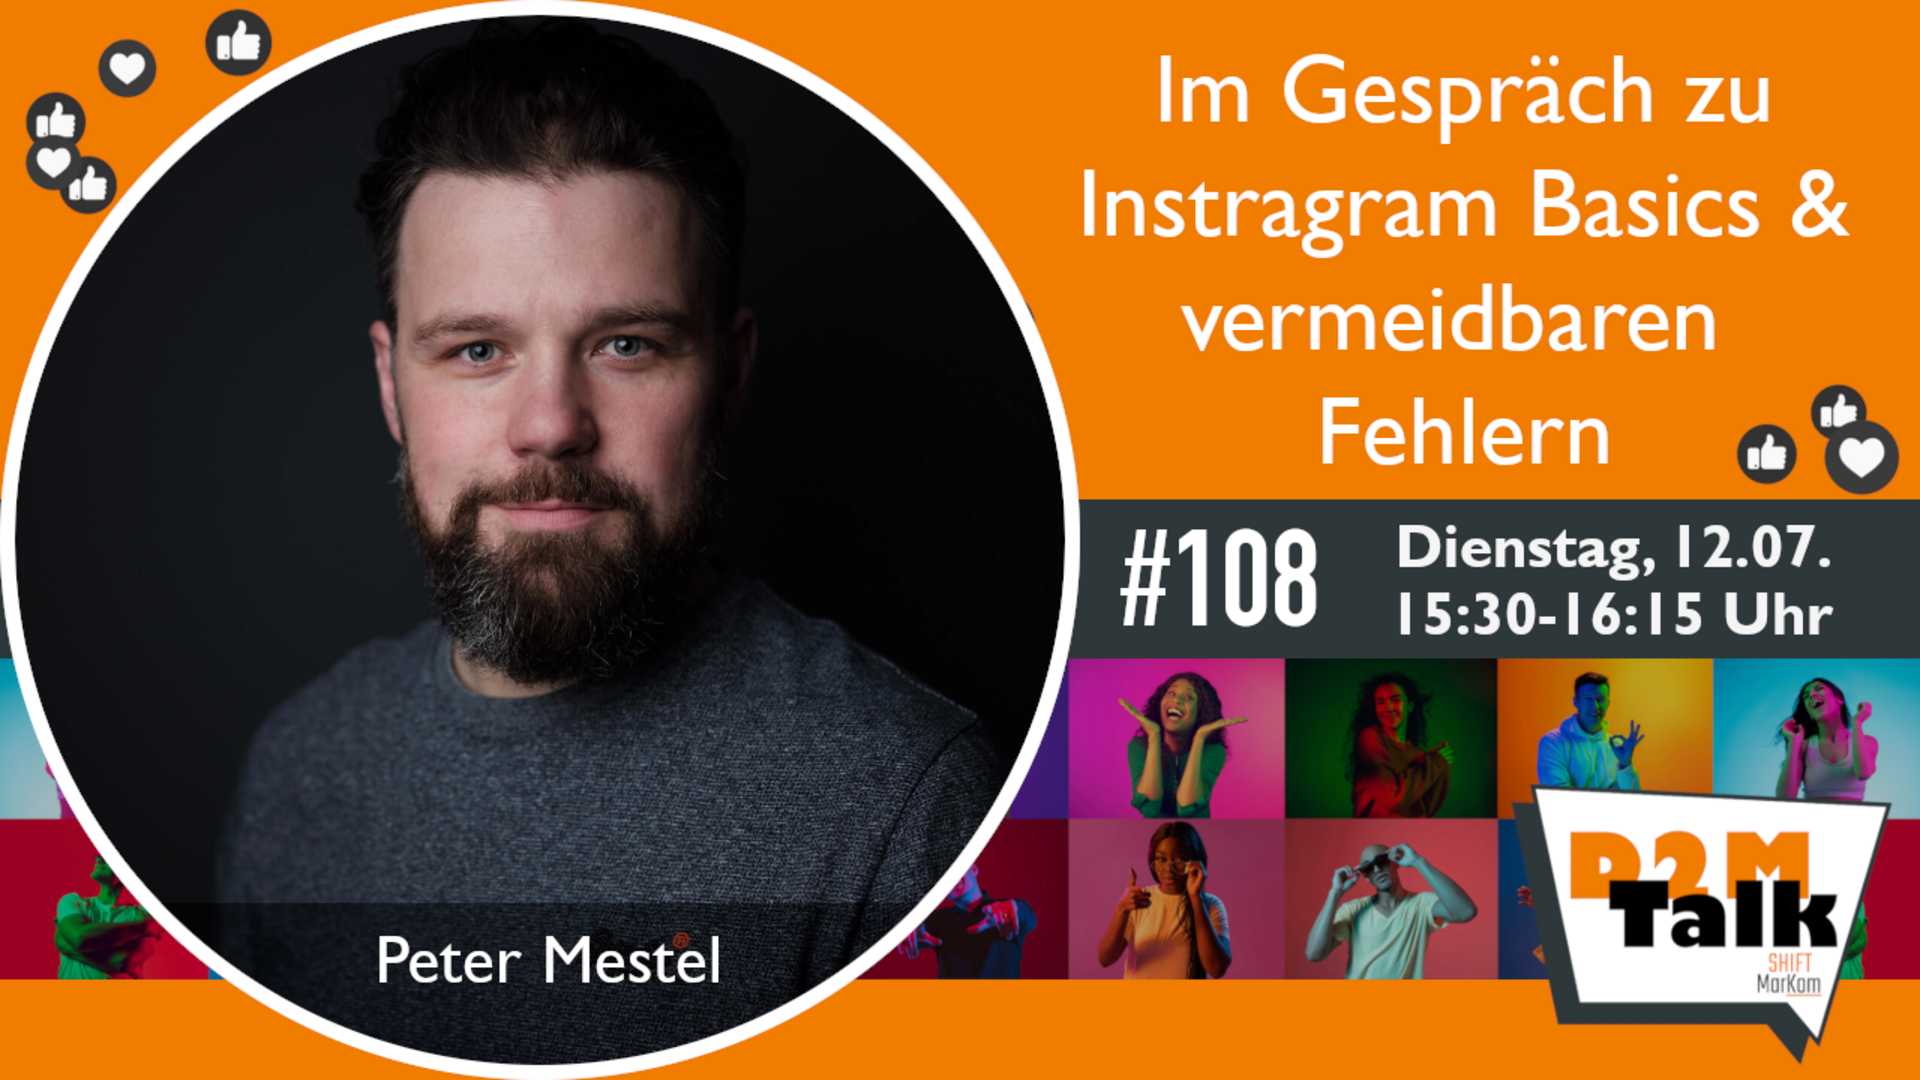 Im Gespräch mit Peter Mestel zu Instagram Basics & vermeidbaren Fehlern